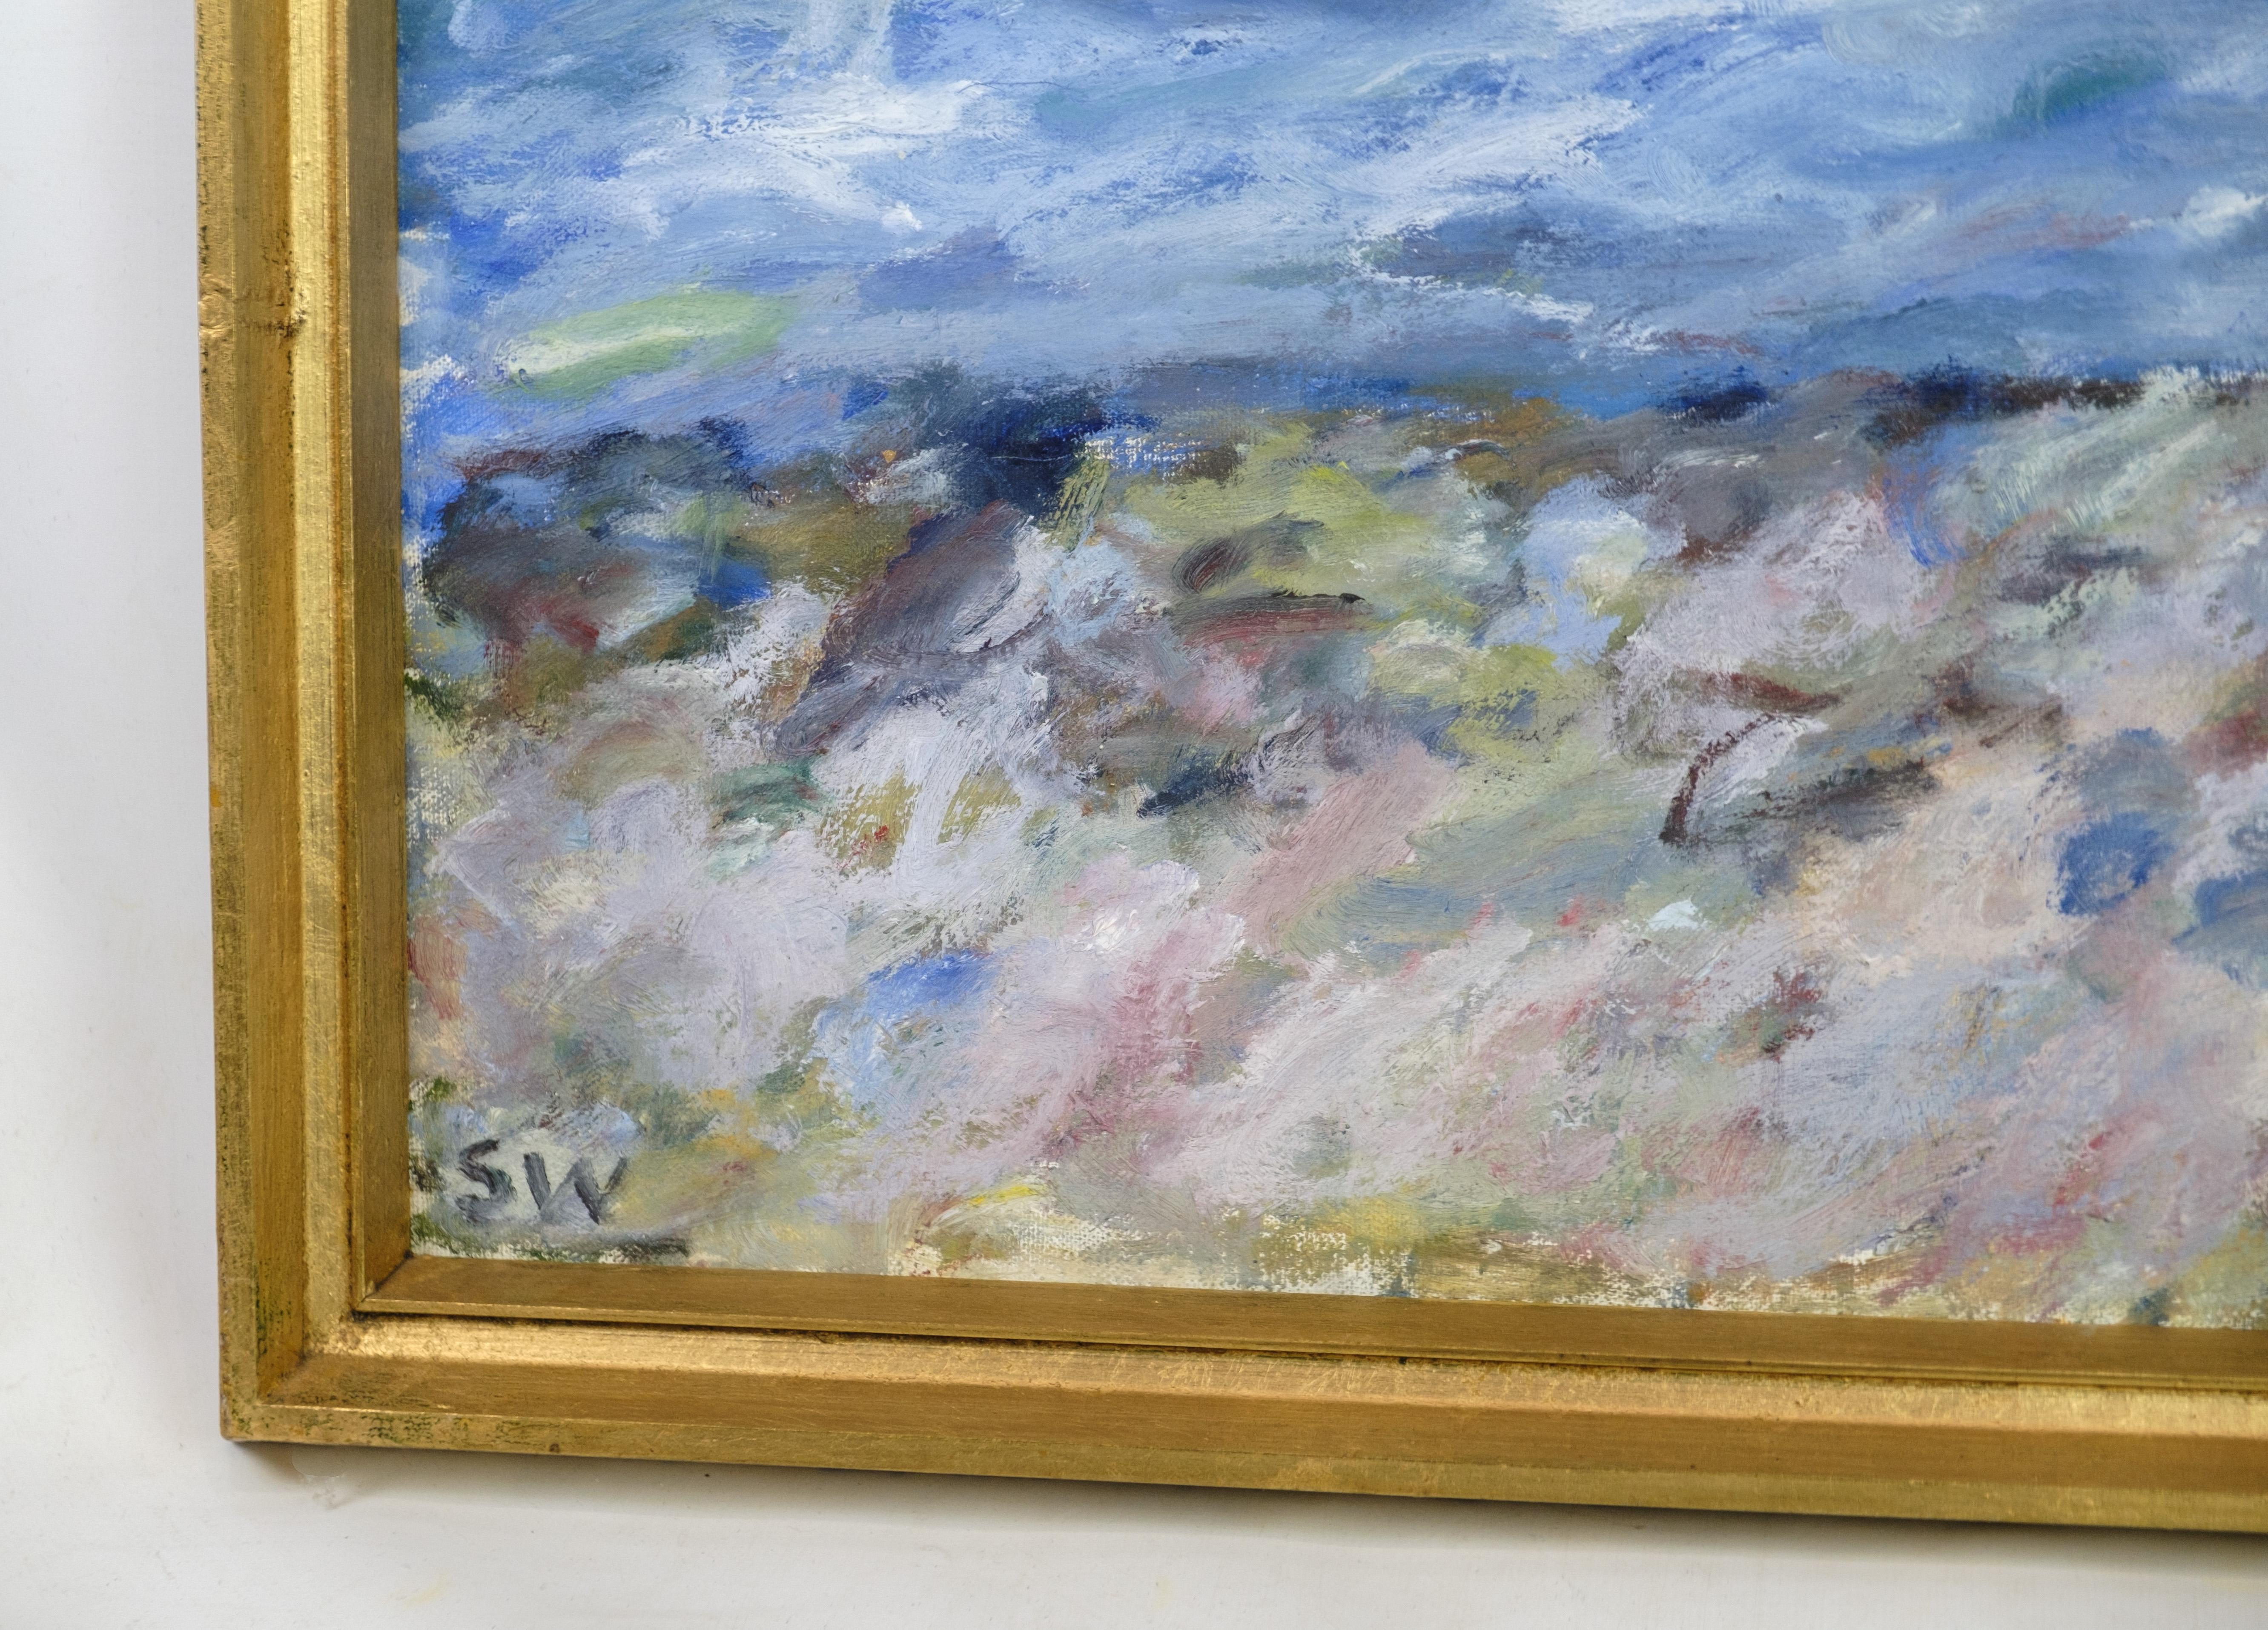 La peinture à l'huile sur toile, qui représente une plage tranquille et une scène de mer, a été réalisée de main de maître par Sixten Wiklund (1907-1986) dans les années 1950.

Capturant la beauté sereine du littoral, les coups de pinceau de Wiklund